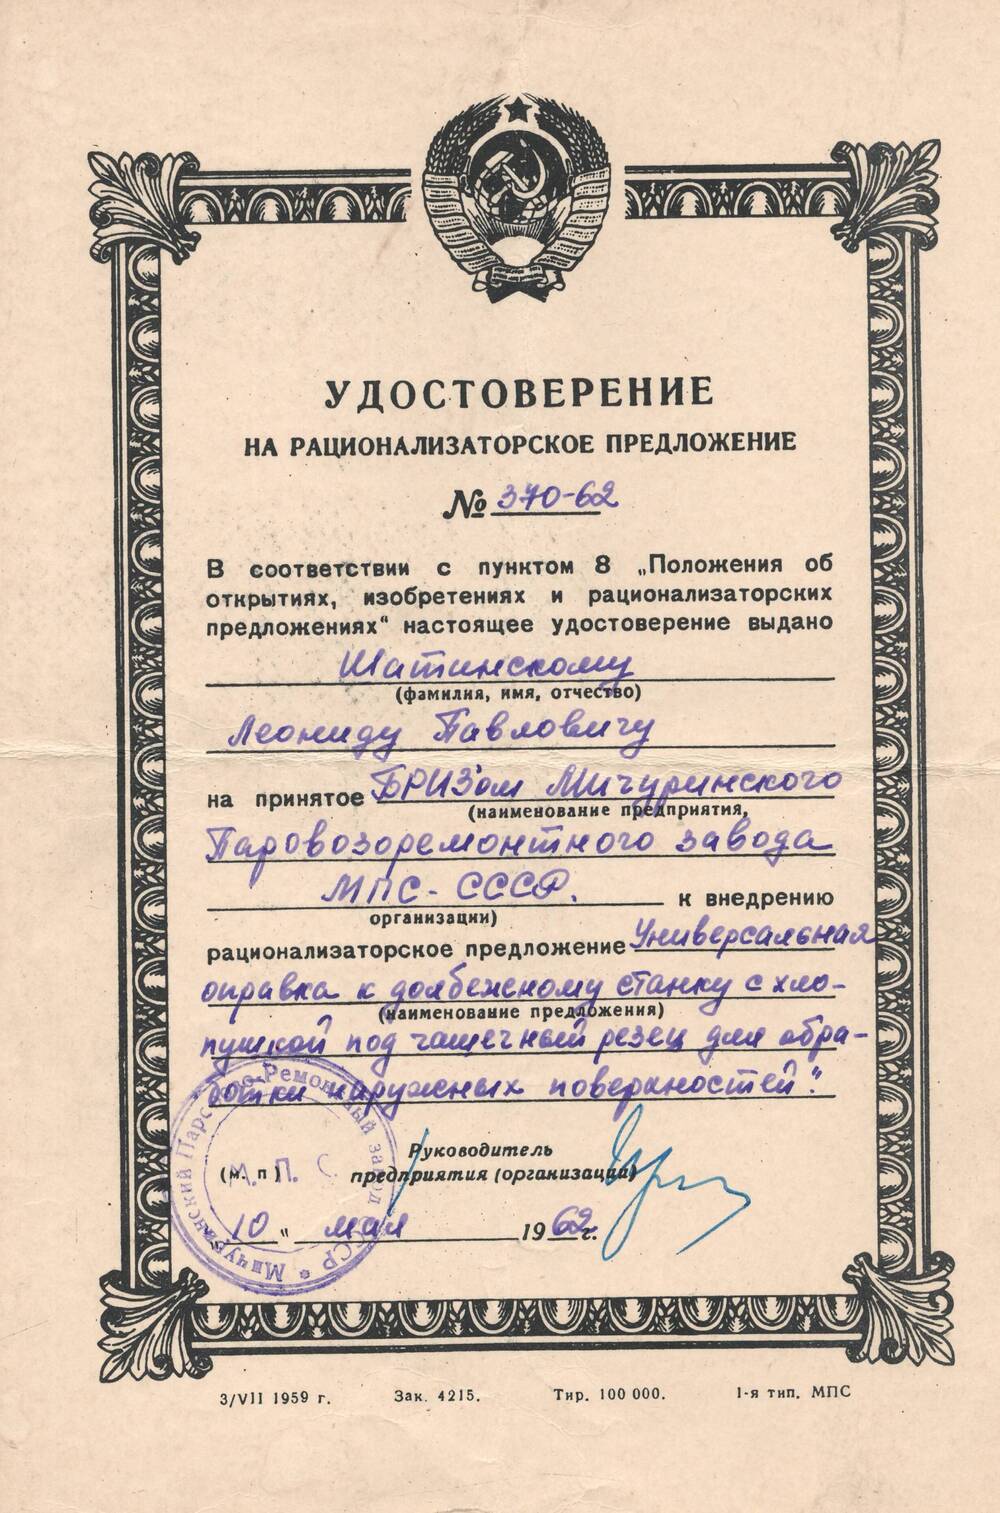 Удостоверение на рационализаторское предложение №370-62, выданное Шатинскому Леониду Павловичу